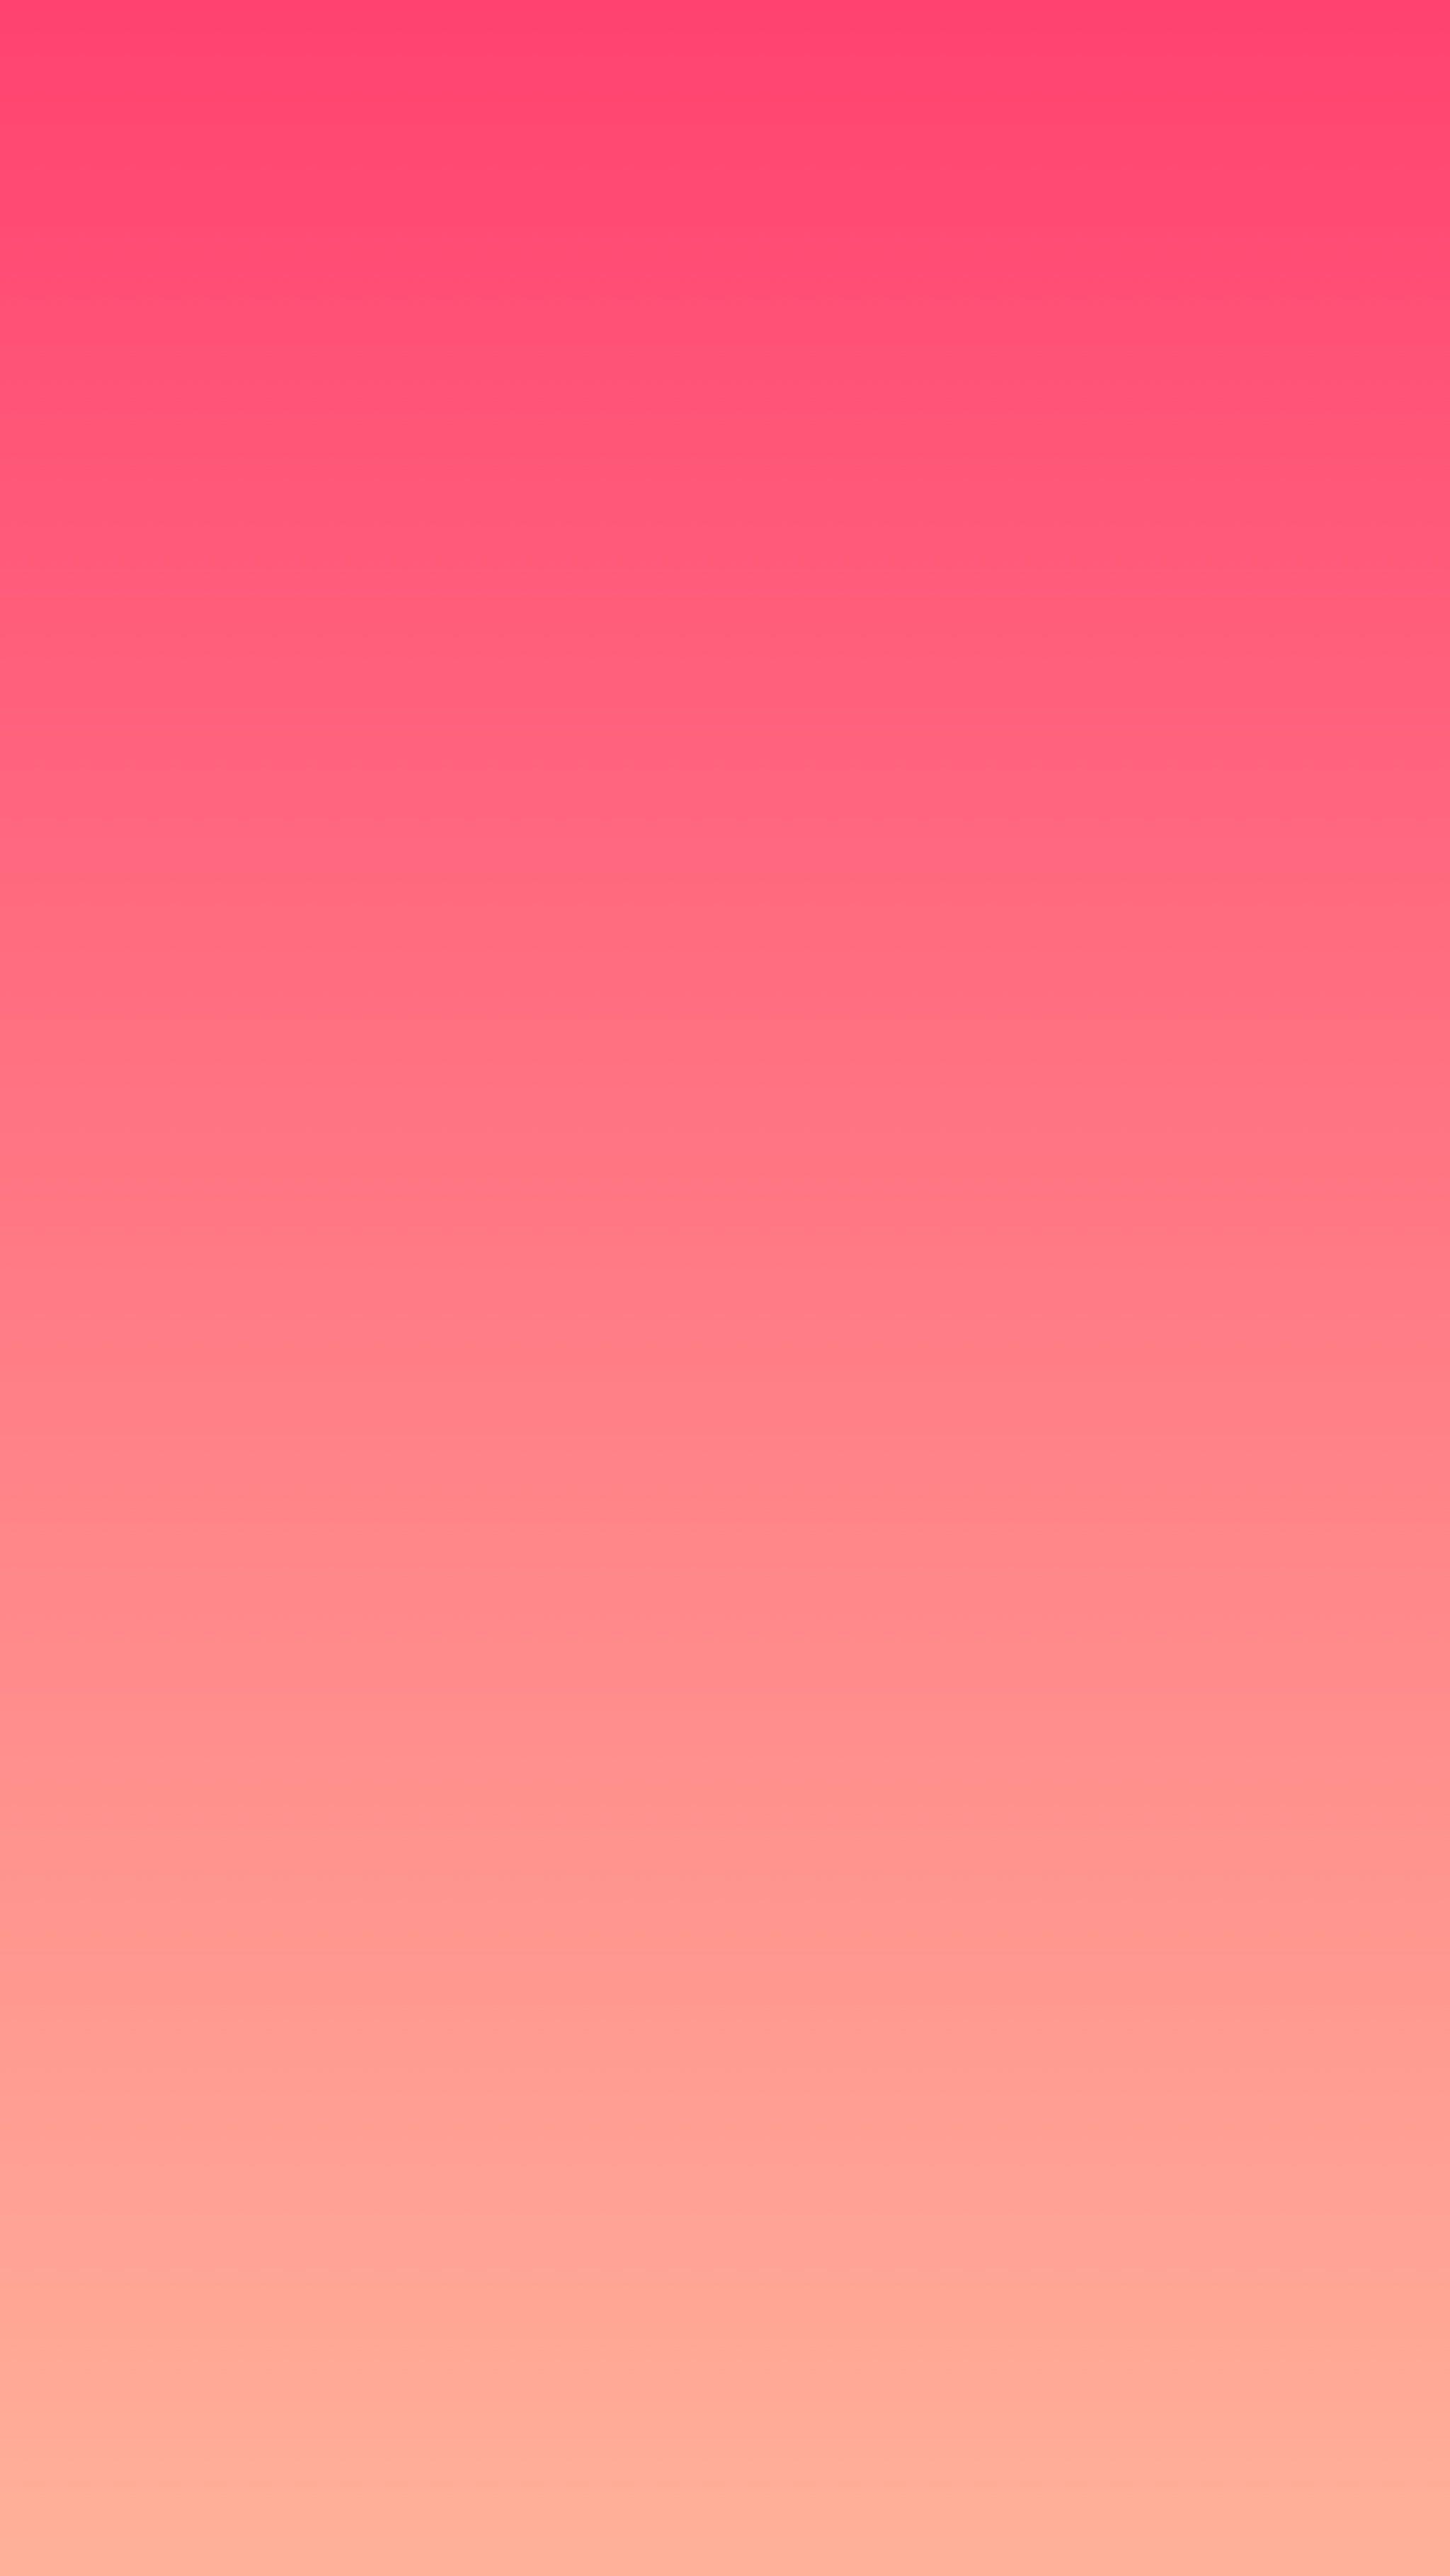 Bạn muốn tìm một mẫu hình nền đẹp và đầy sự nổi bật? Vậy thì tại sao không thử bản mẫu salmon pink wallpapers, một mẫu hình nền đầy tinh tế và sự tươi sáng. Với gam đỏ nhạt trên nền trắng, bạn sẽ cảm thấy rất năng động và cảm thấy tự tin mỗi khi sử dụng thiết bị của mình. Hãy cùng khám phá ngay mẫu hình nền salmon pink wallpapers nhé!